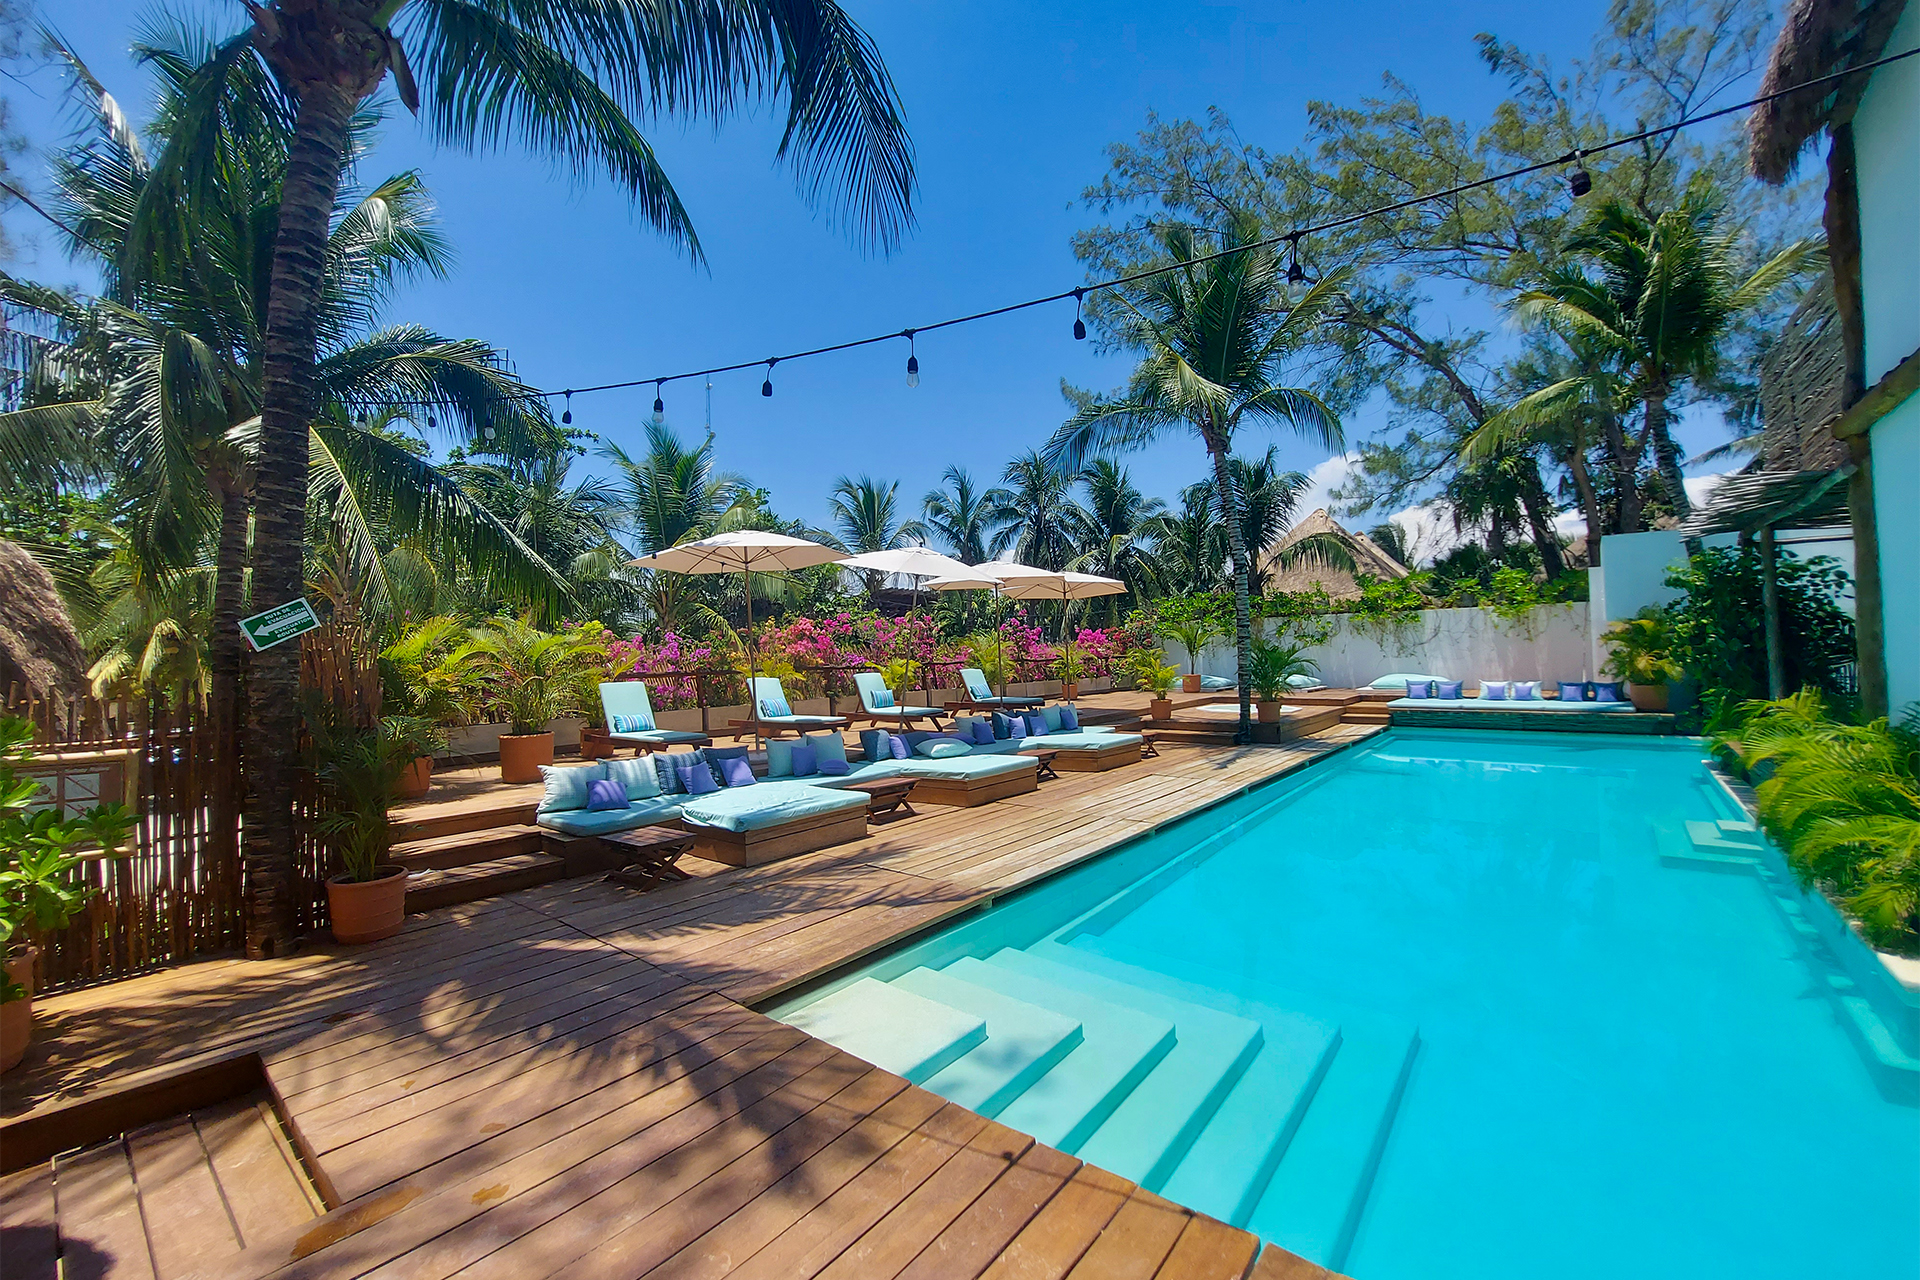 Pool at Cabanas Tulum hotel